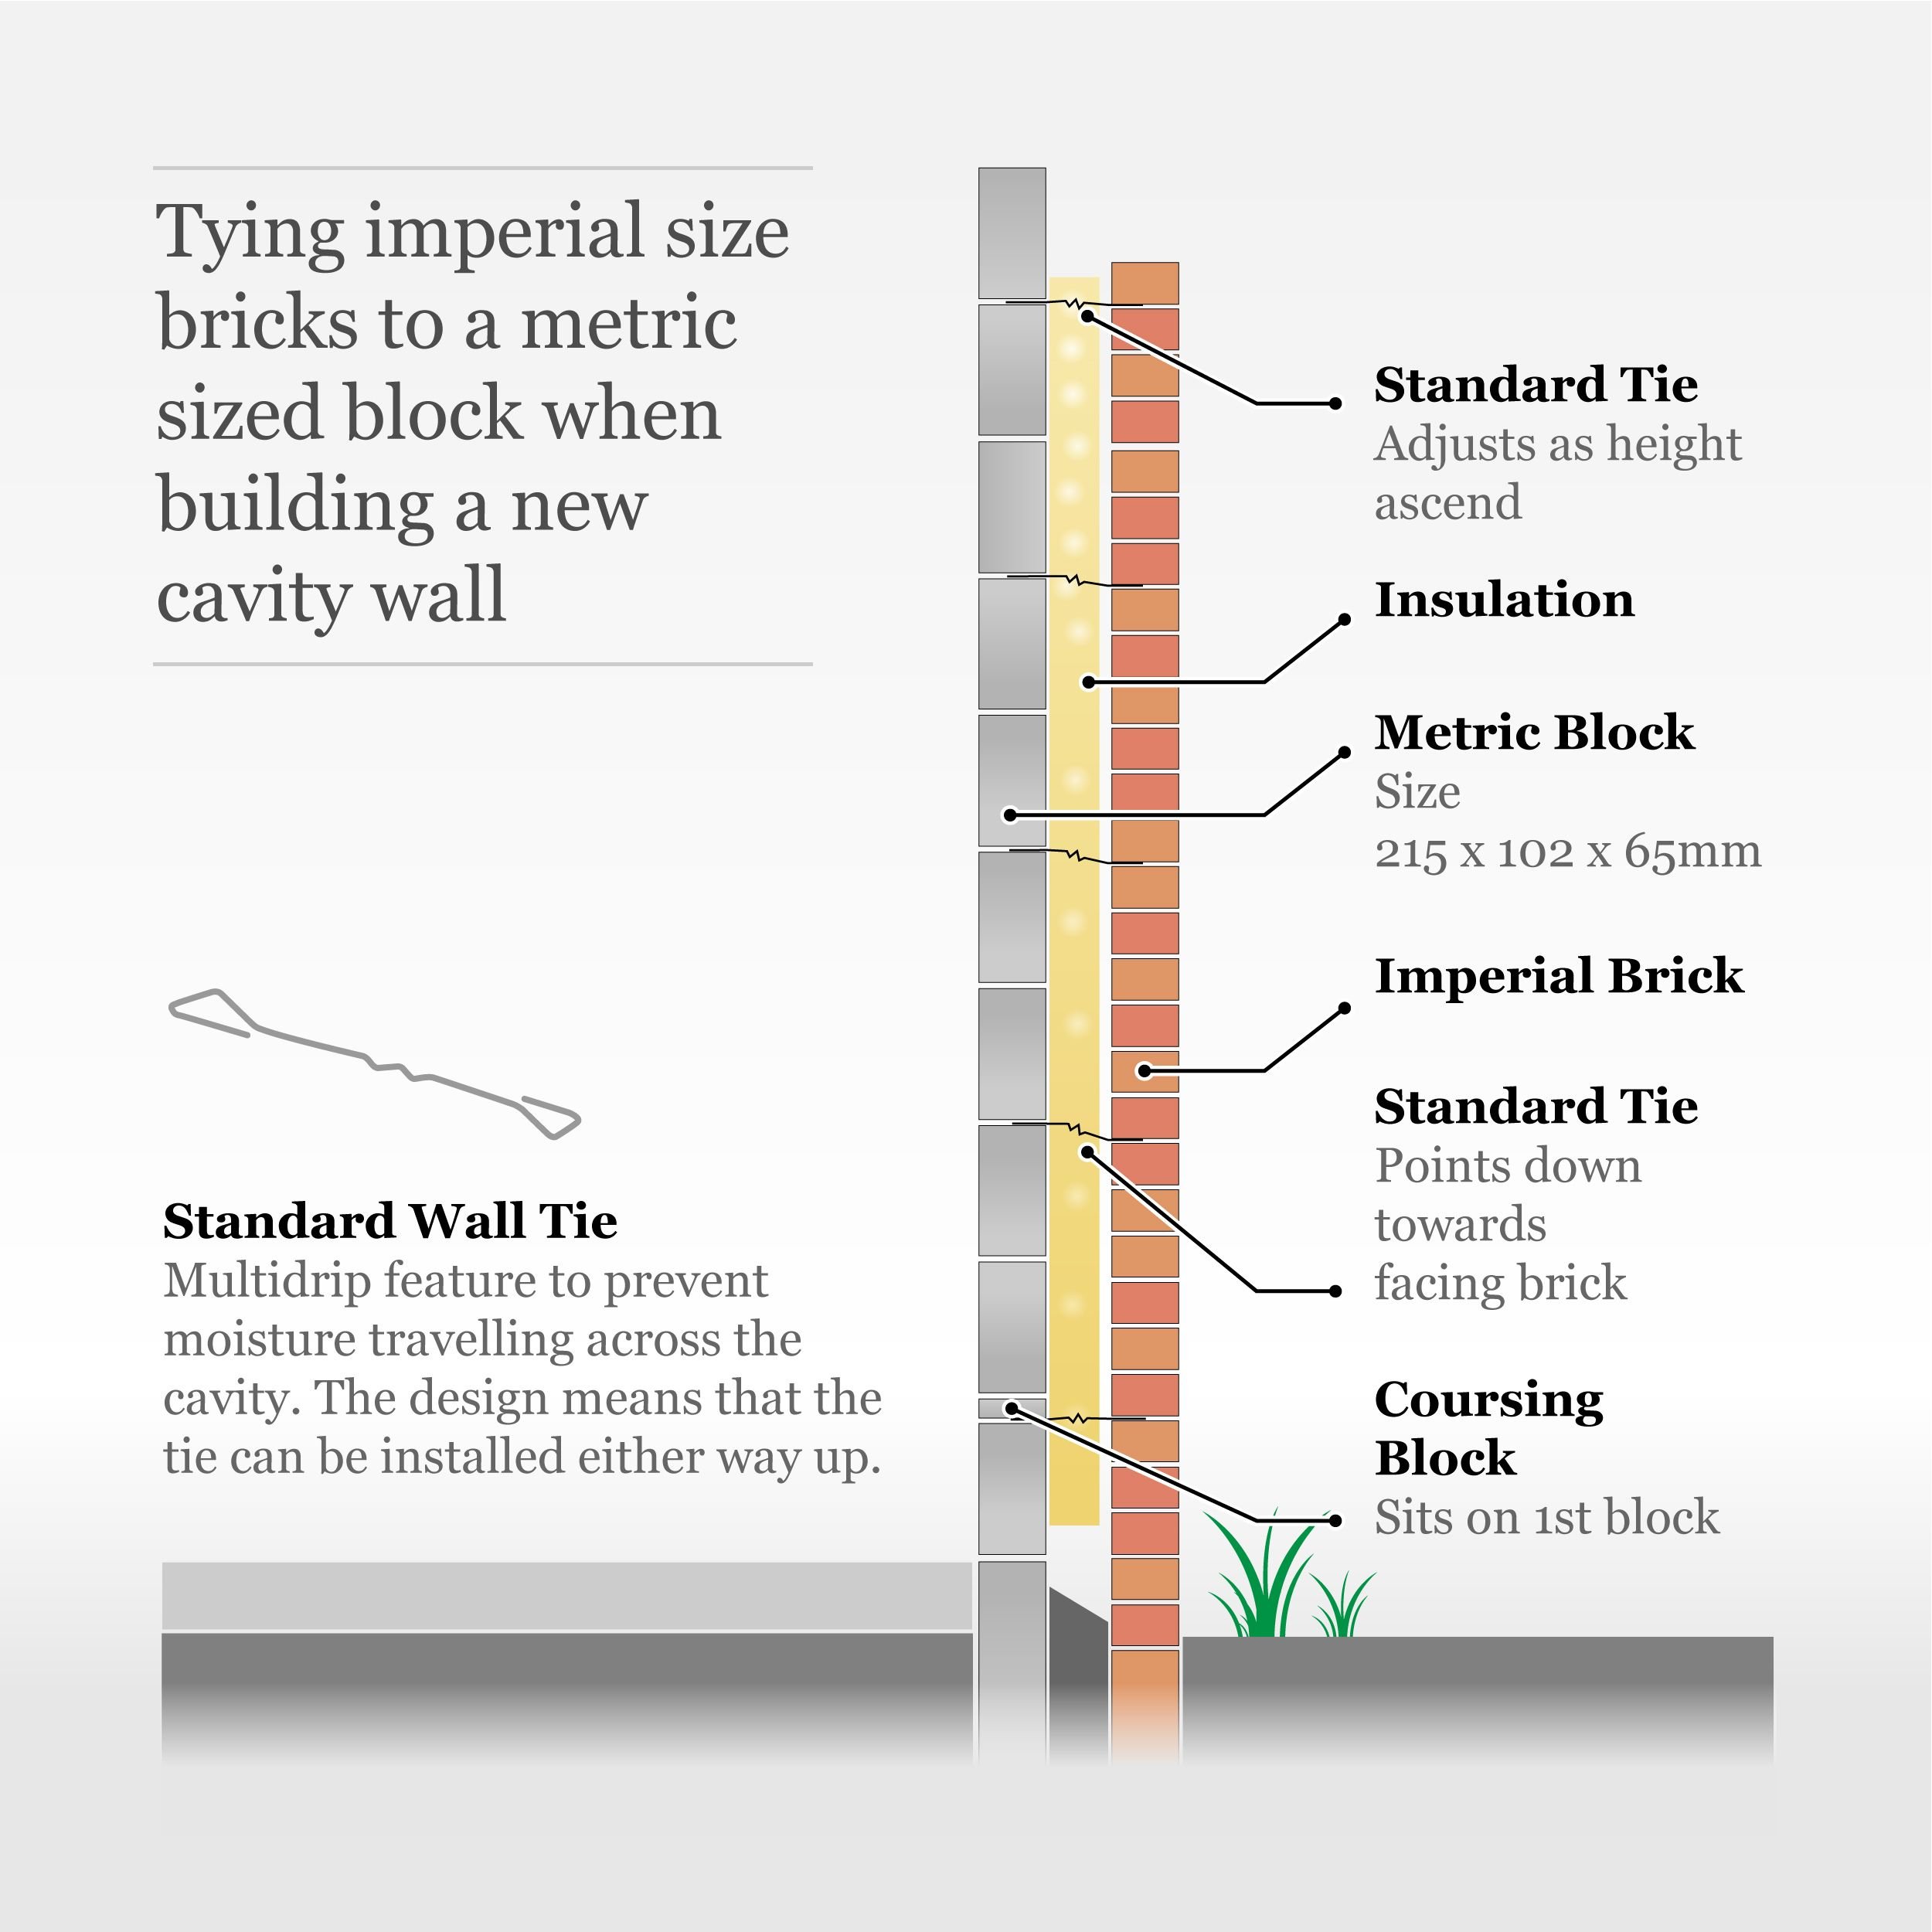 Standard ties for imperial bricks